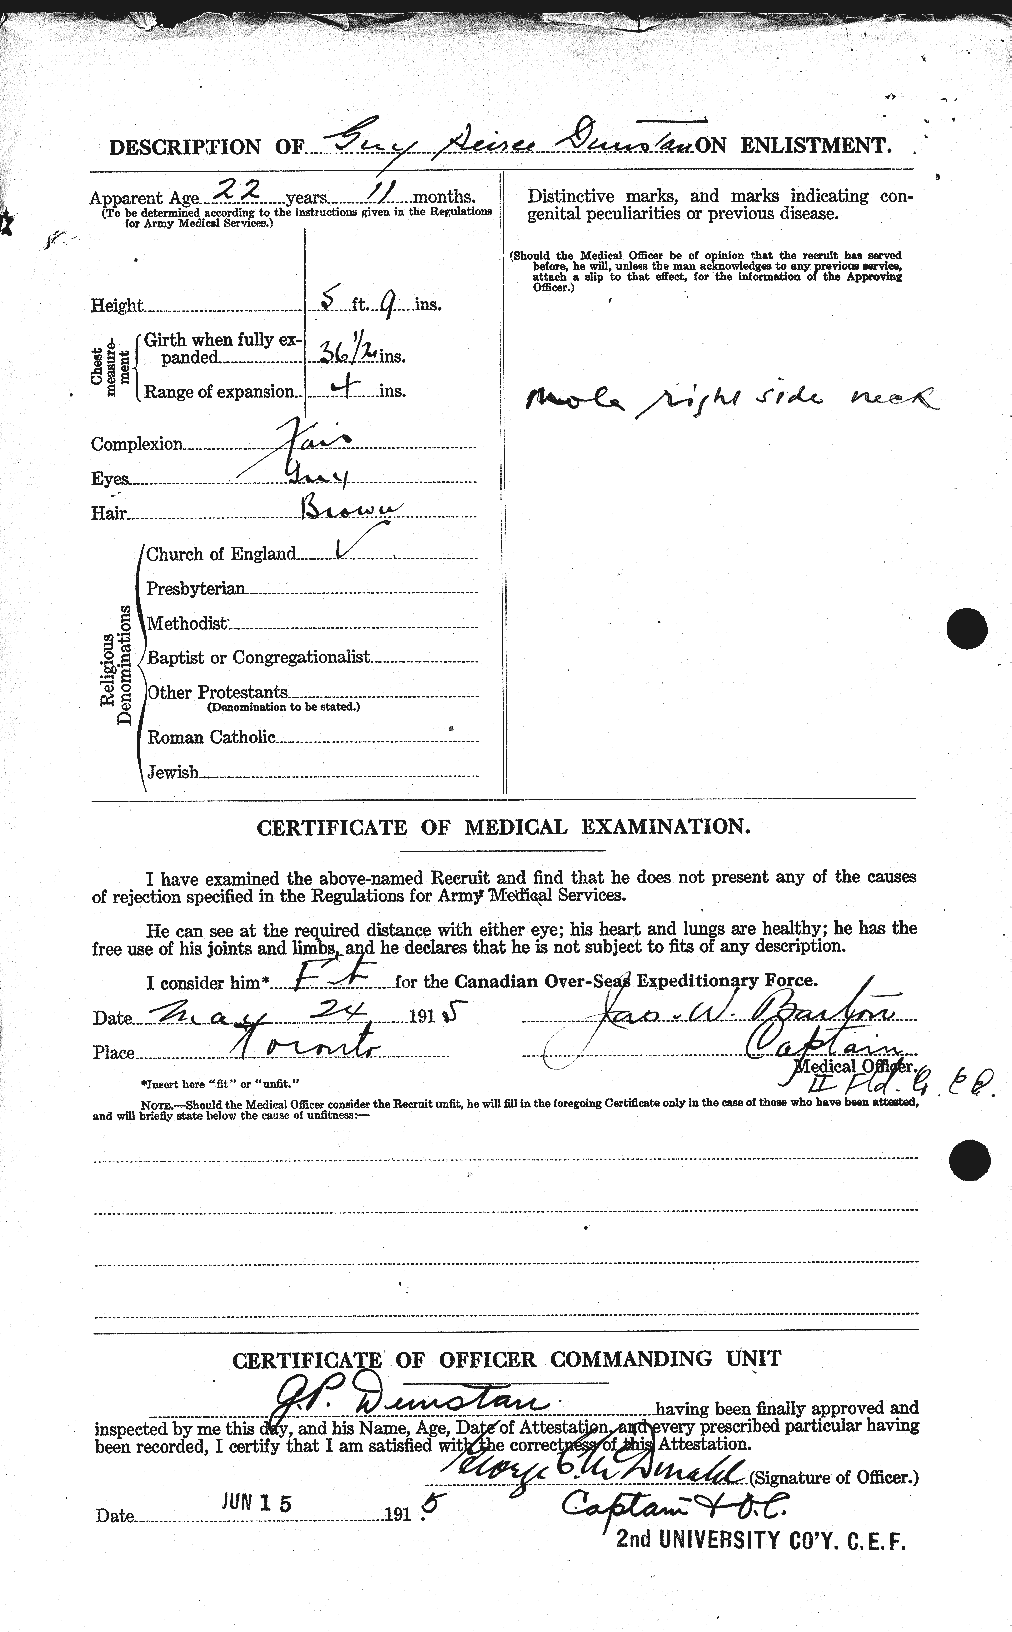 Dossiers du Personnel de la Première Guerre mondiale - CEC 304945b